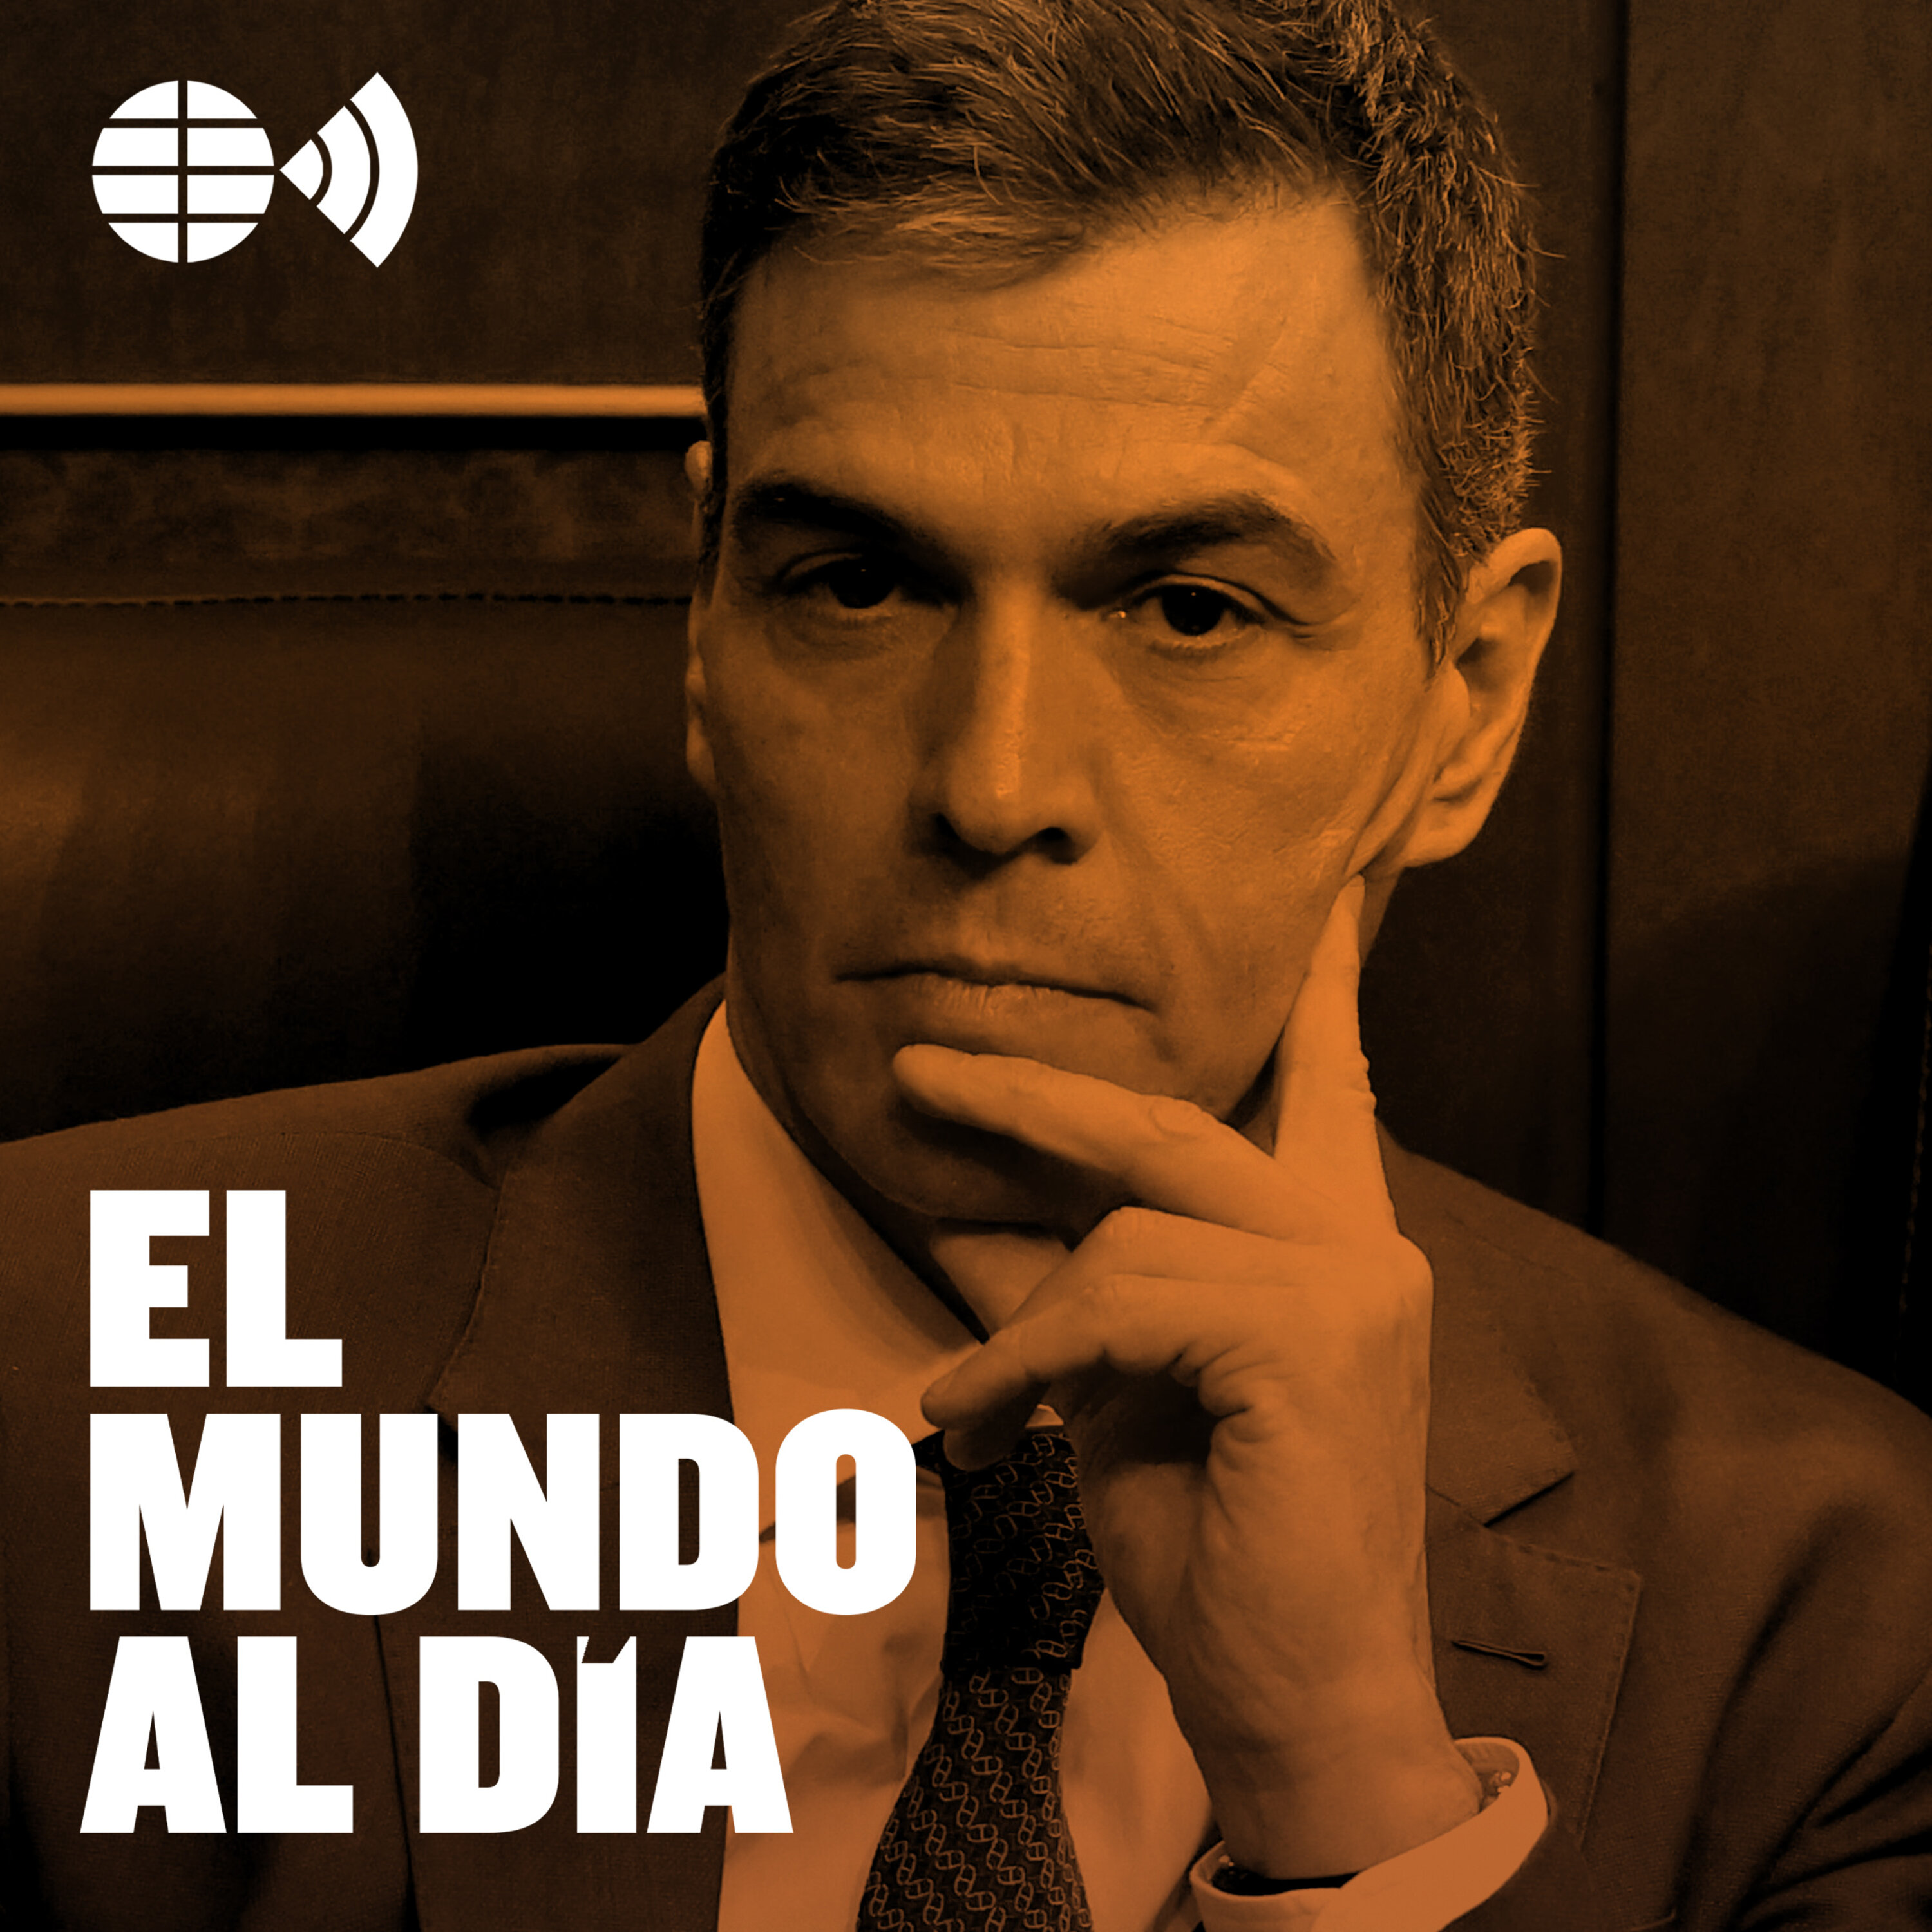 Pedro Sánchez: ¿estrategia o dimisión?